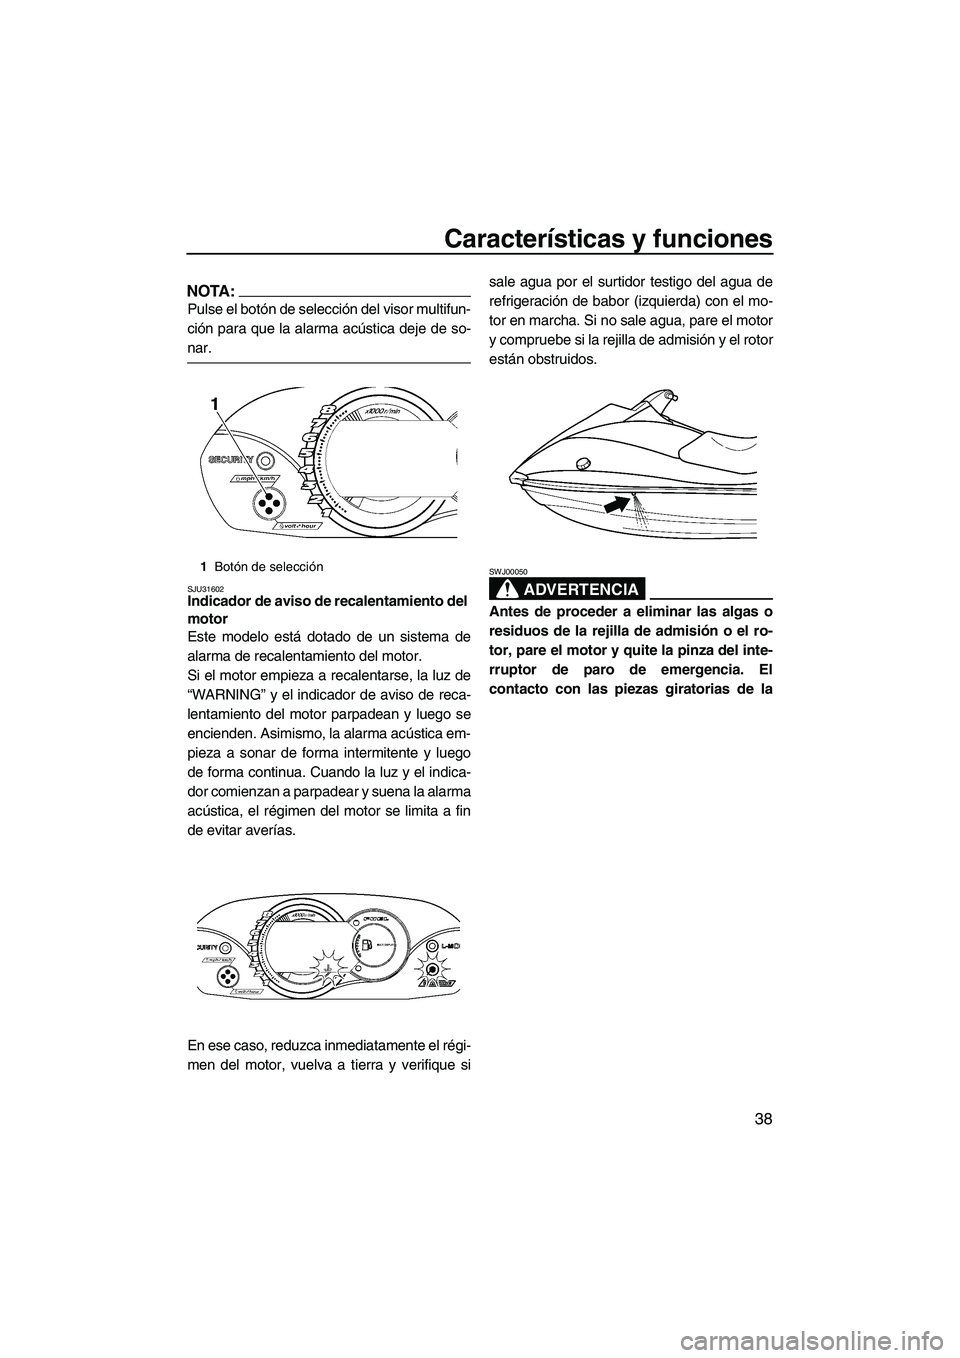 YAMAHA VX DELUXE 2007  Manuale de Empleo (in Spanish) Características y funciones
38
NOTA:
Pulse el botón de selección del visor multifun-
ción para que la alarma acústica deje de so-
nar.
SJU31602Indicador de aviso de recalentamiento del 
motor 
Es